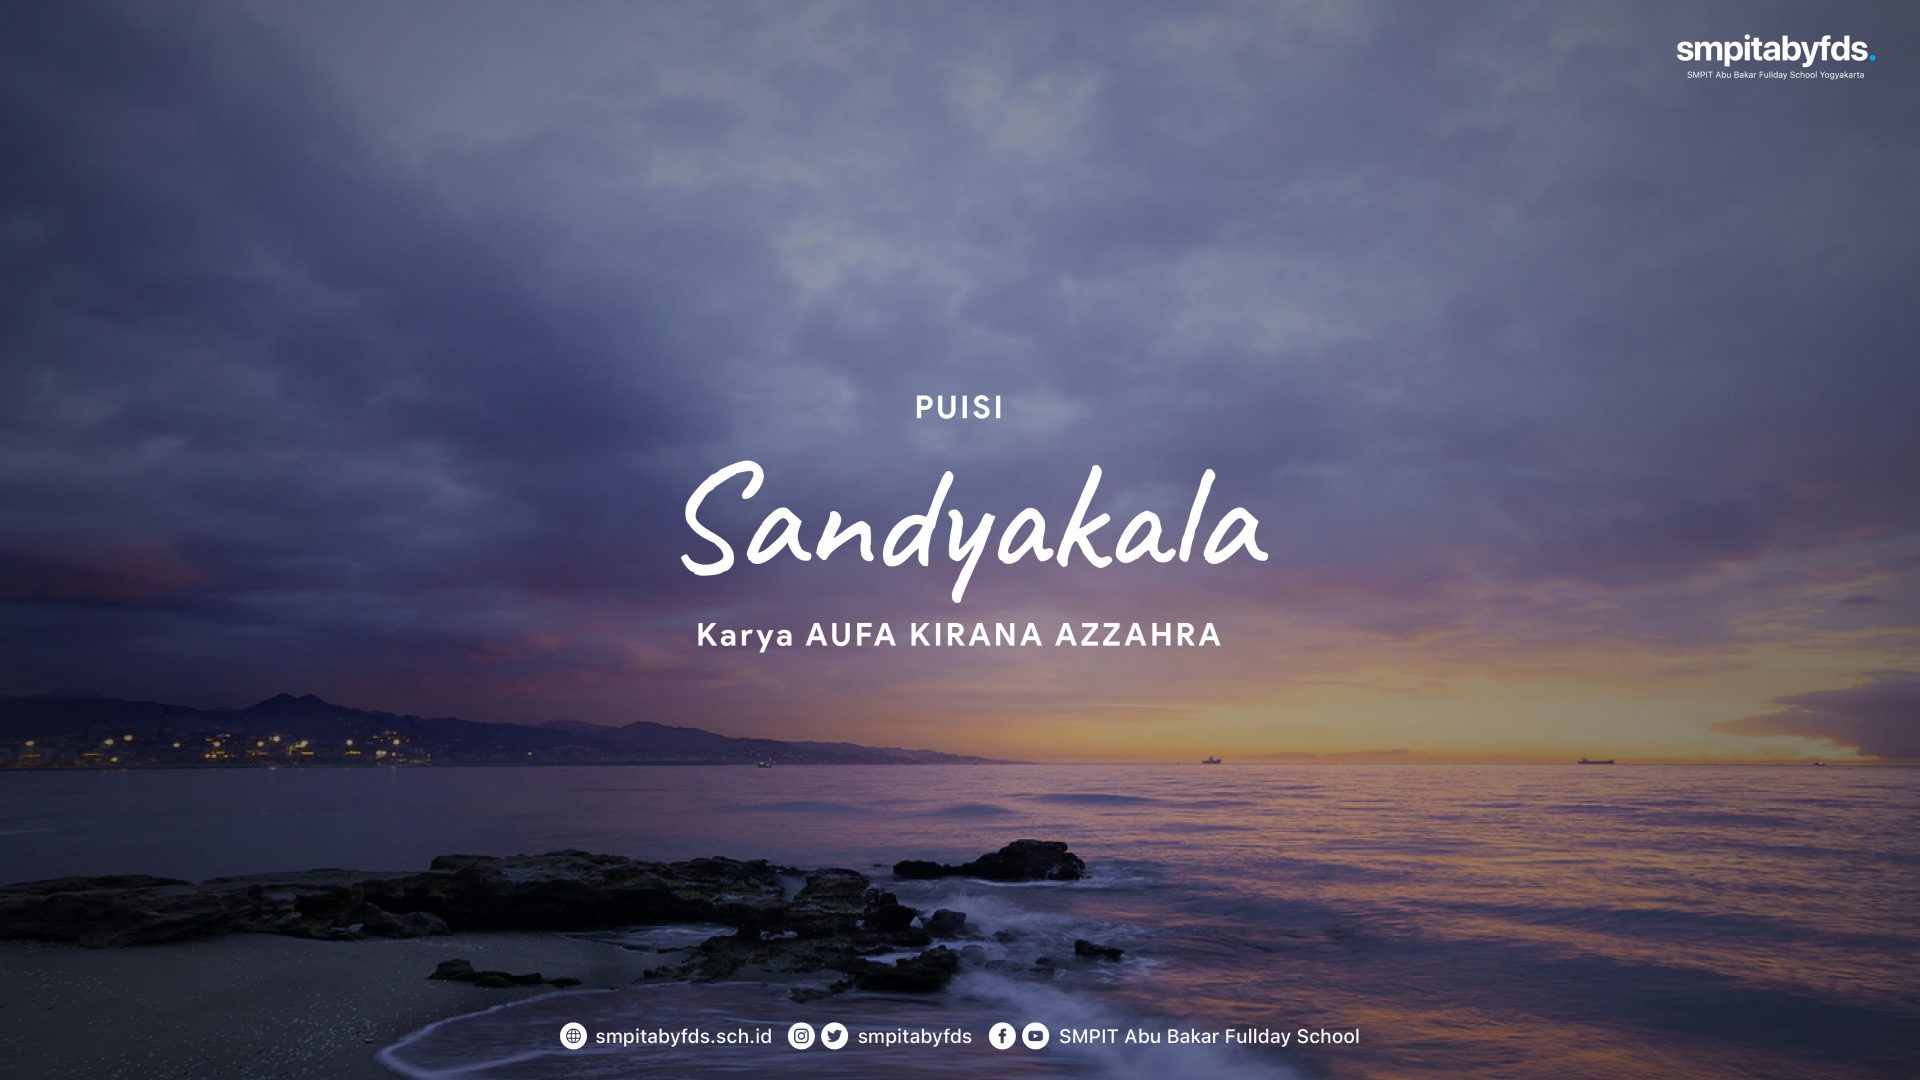 Puisi – Sandyakala karya Aufa Kirana Azzahra